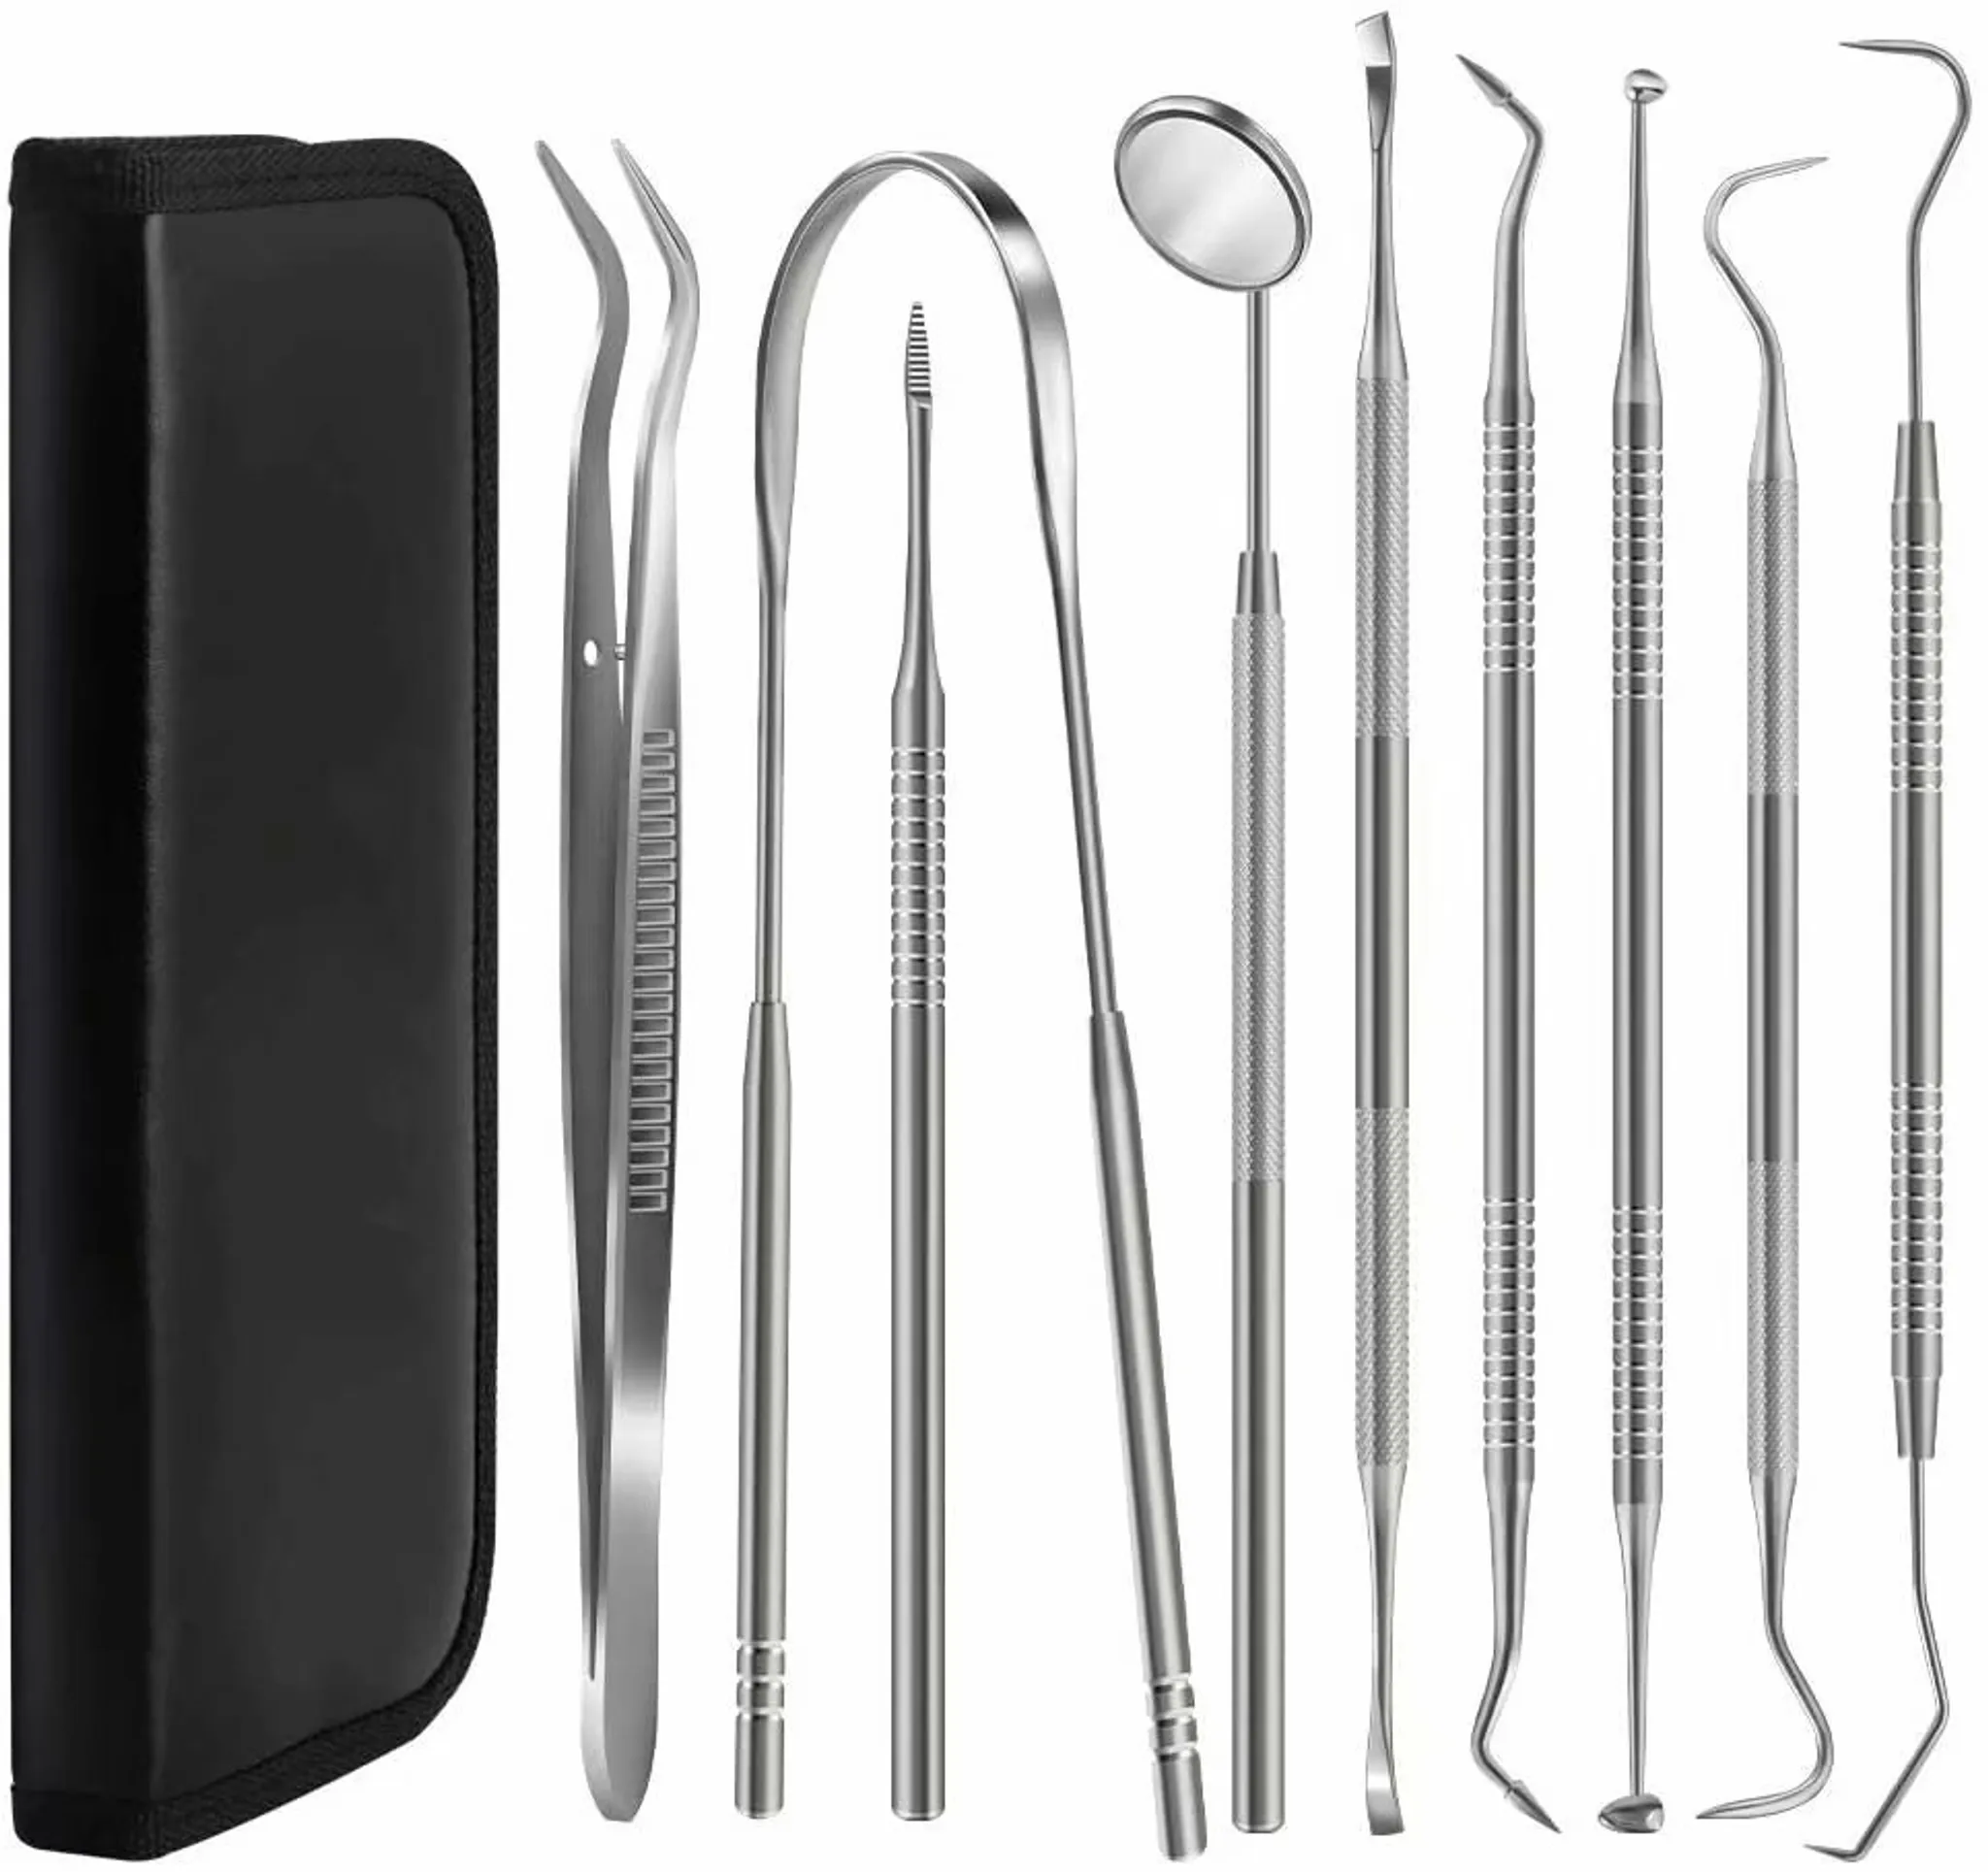 Dental Pick Tools, 9er Pack Professional